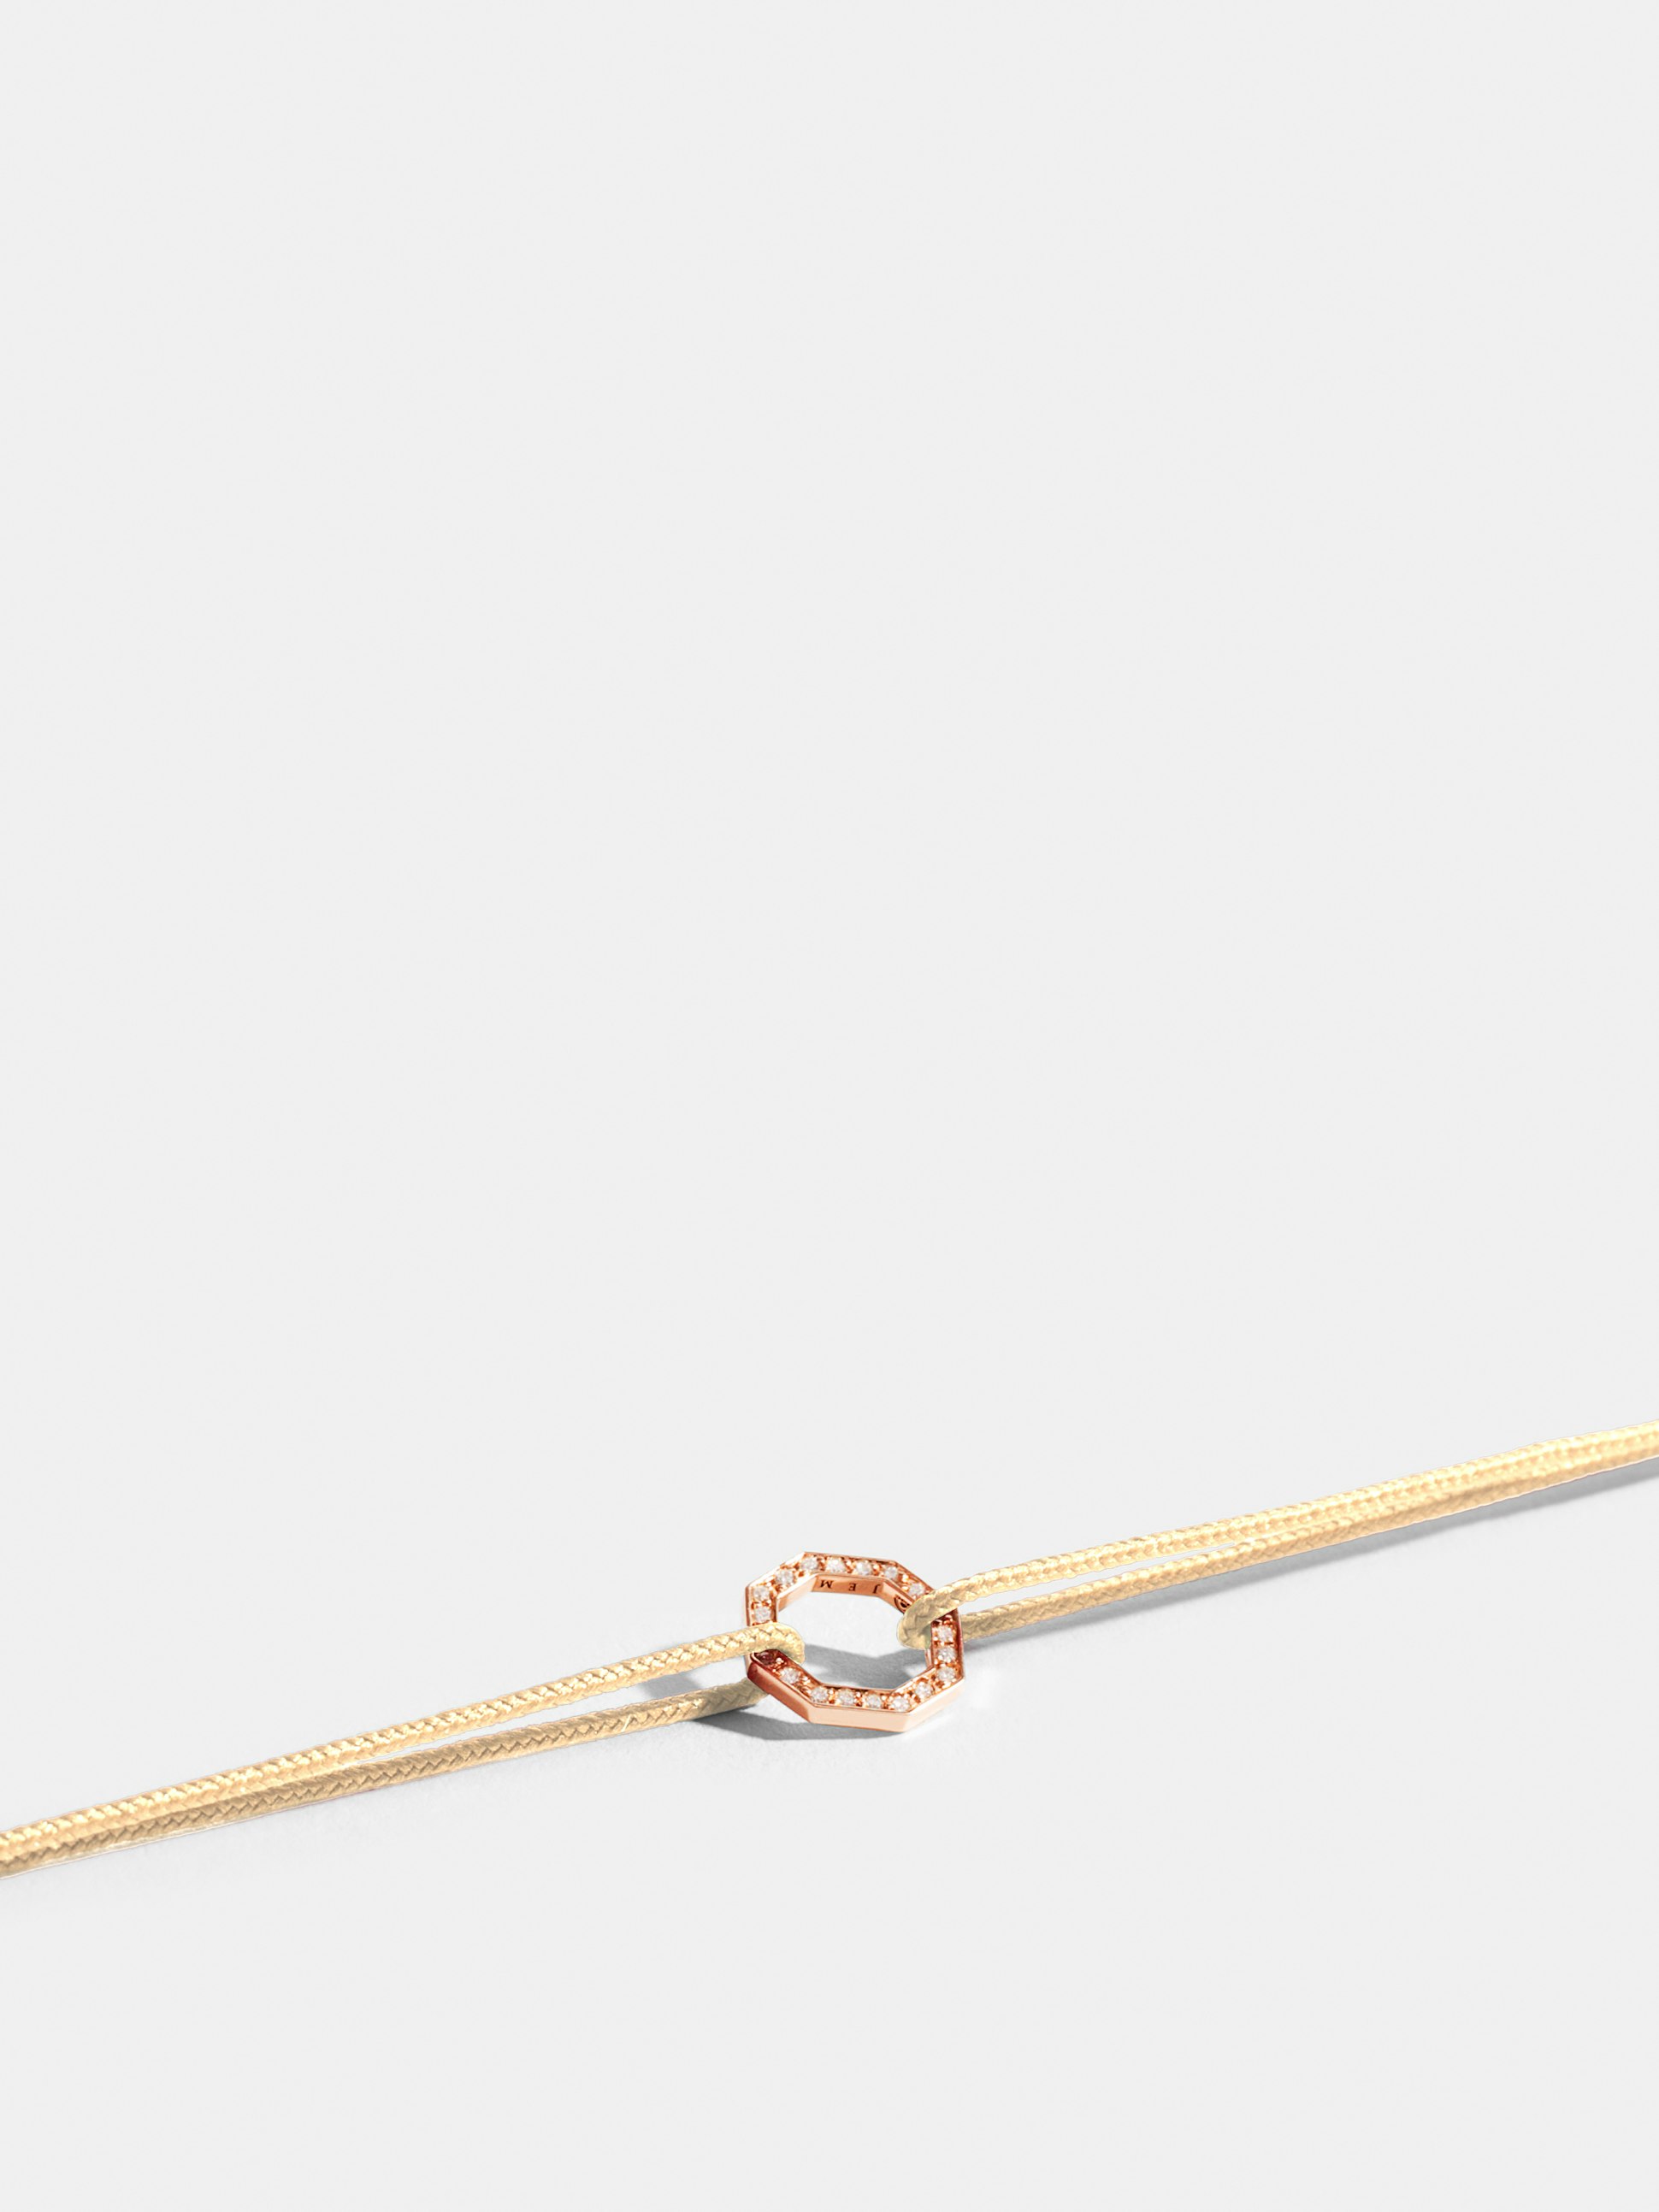 Motif Octogone en Or rose éthique 18 carats certifié Fairmined et pavé de diamants de synthèse, sur cordon blanc ivoire.